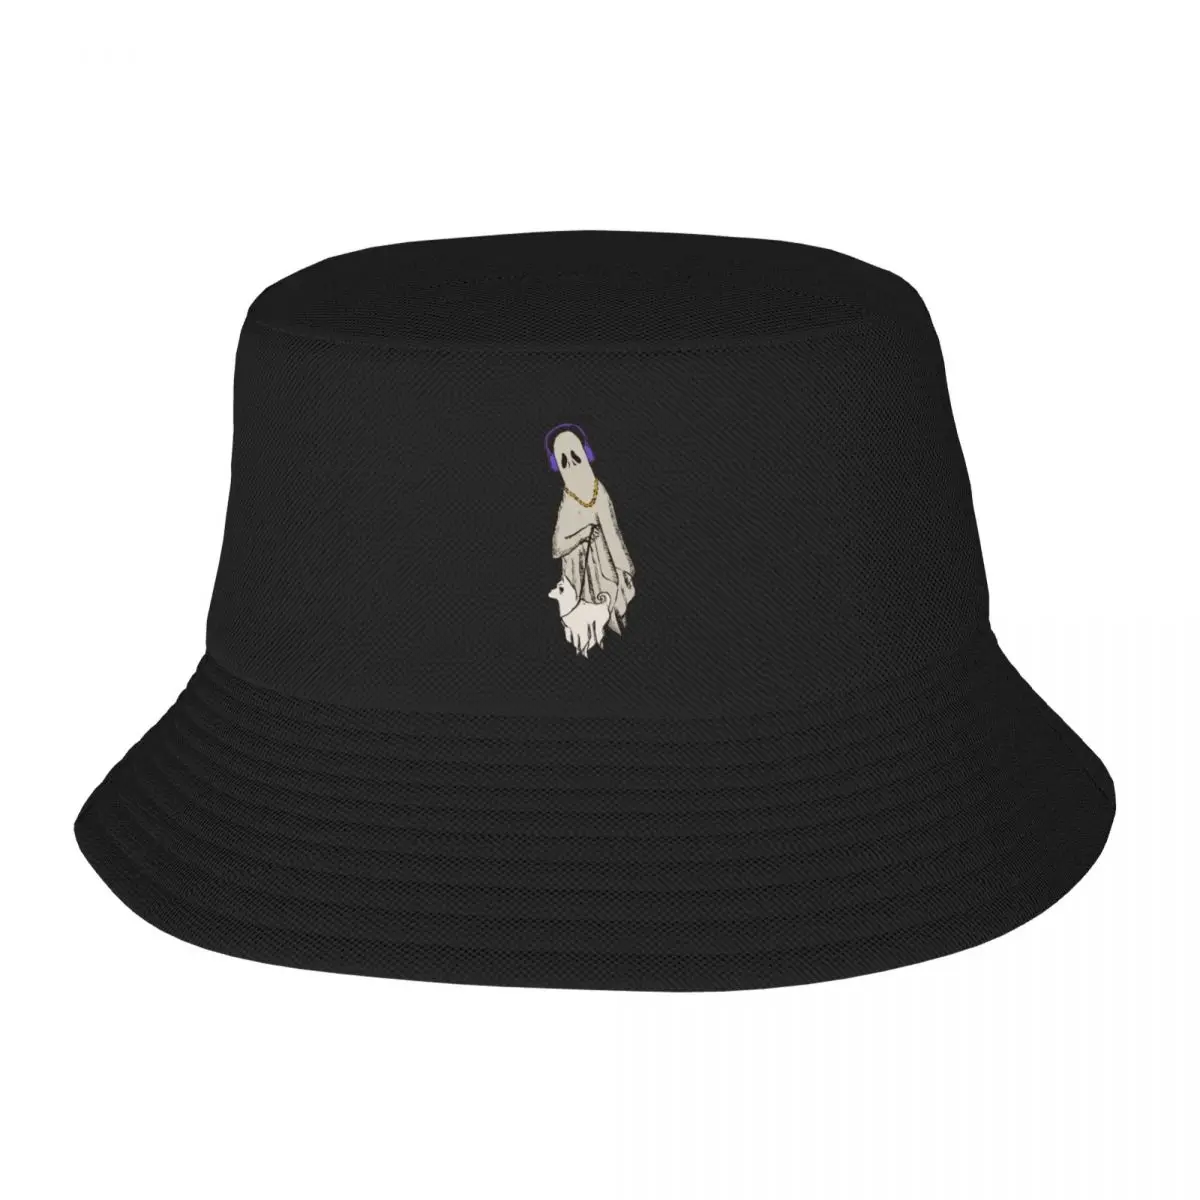 Новый лучший друг до конца, брендовые мужские кепки-ведерки, шляпа большого размера, мужская женская шляпа 0